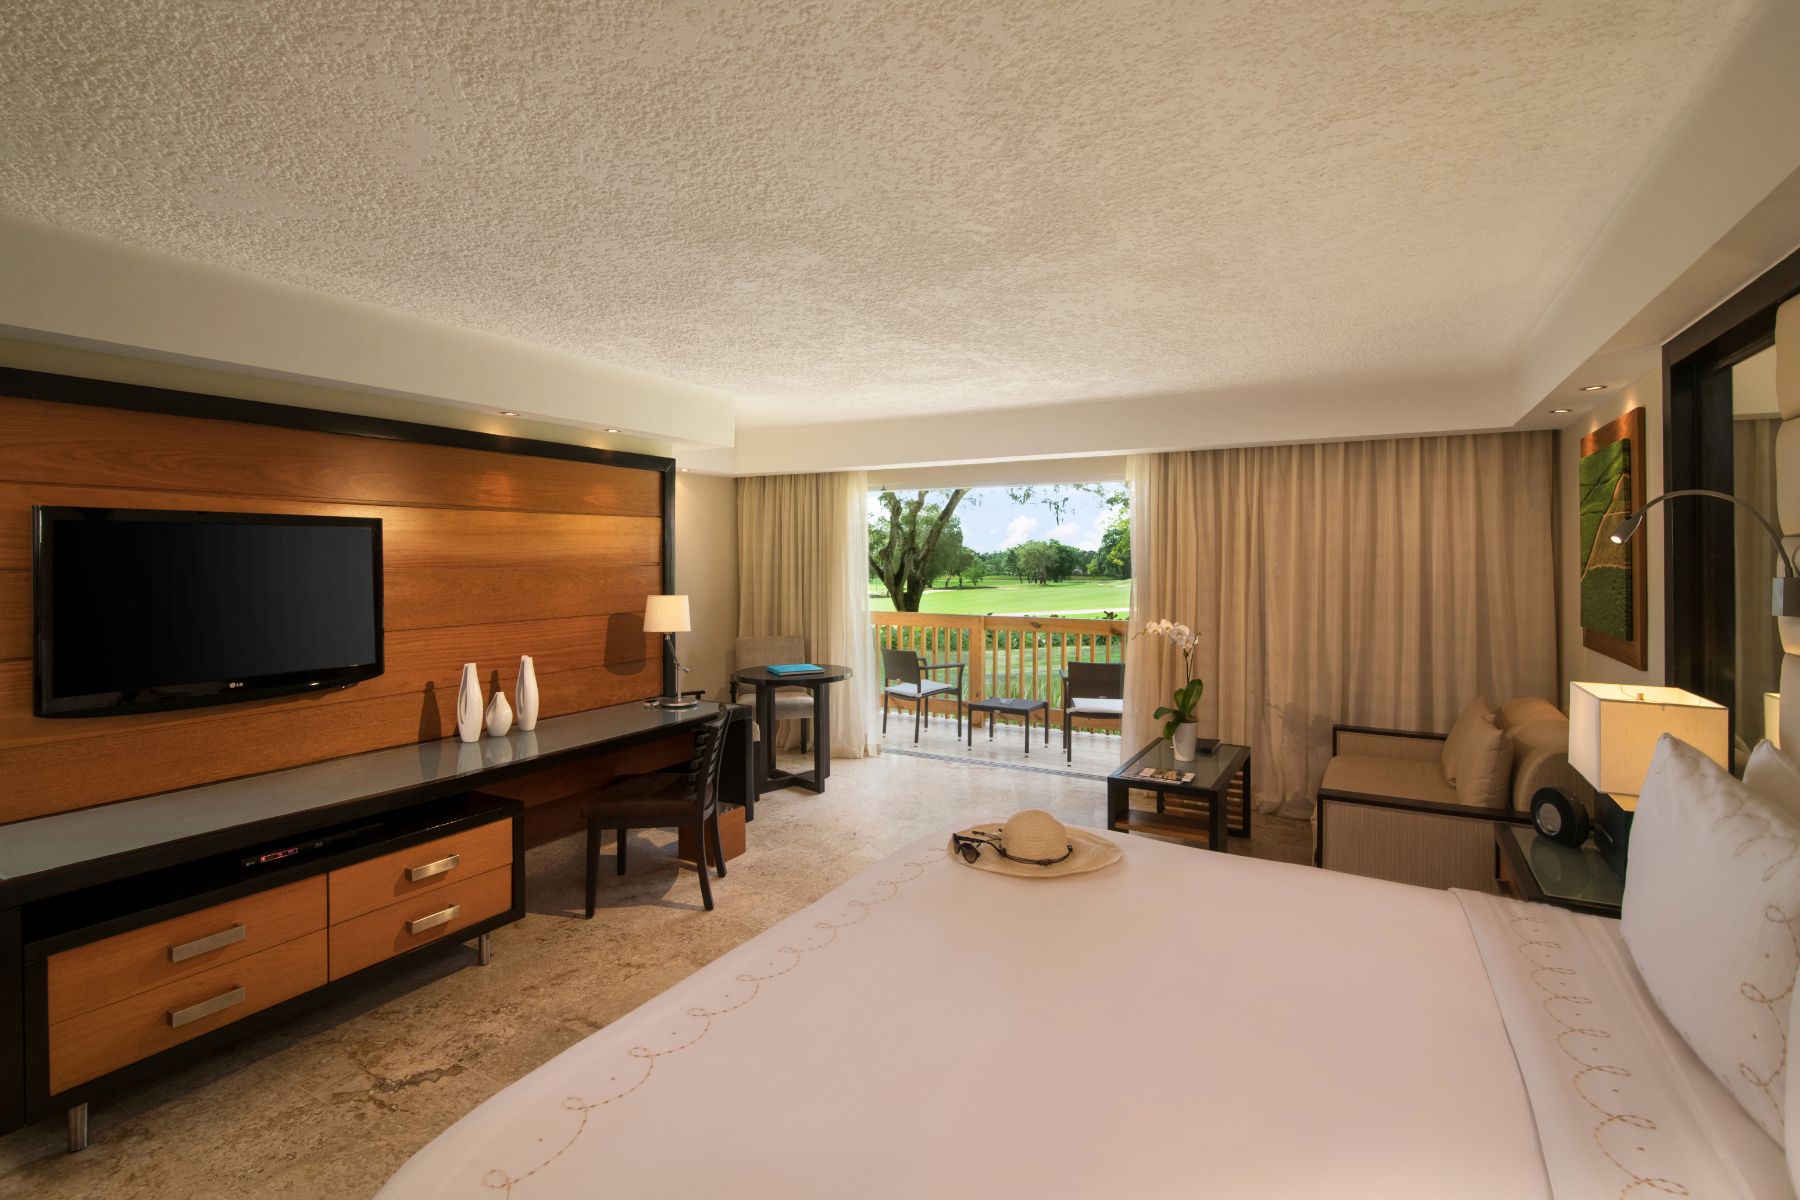 Elite Dominican Republic Resort Hotel Suite at Casa de Campo Resort & Villas.